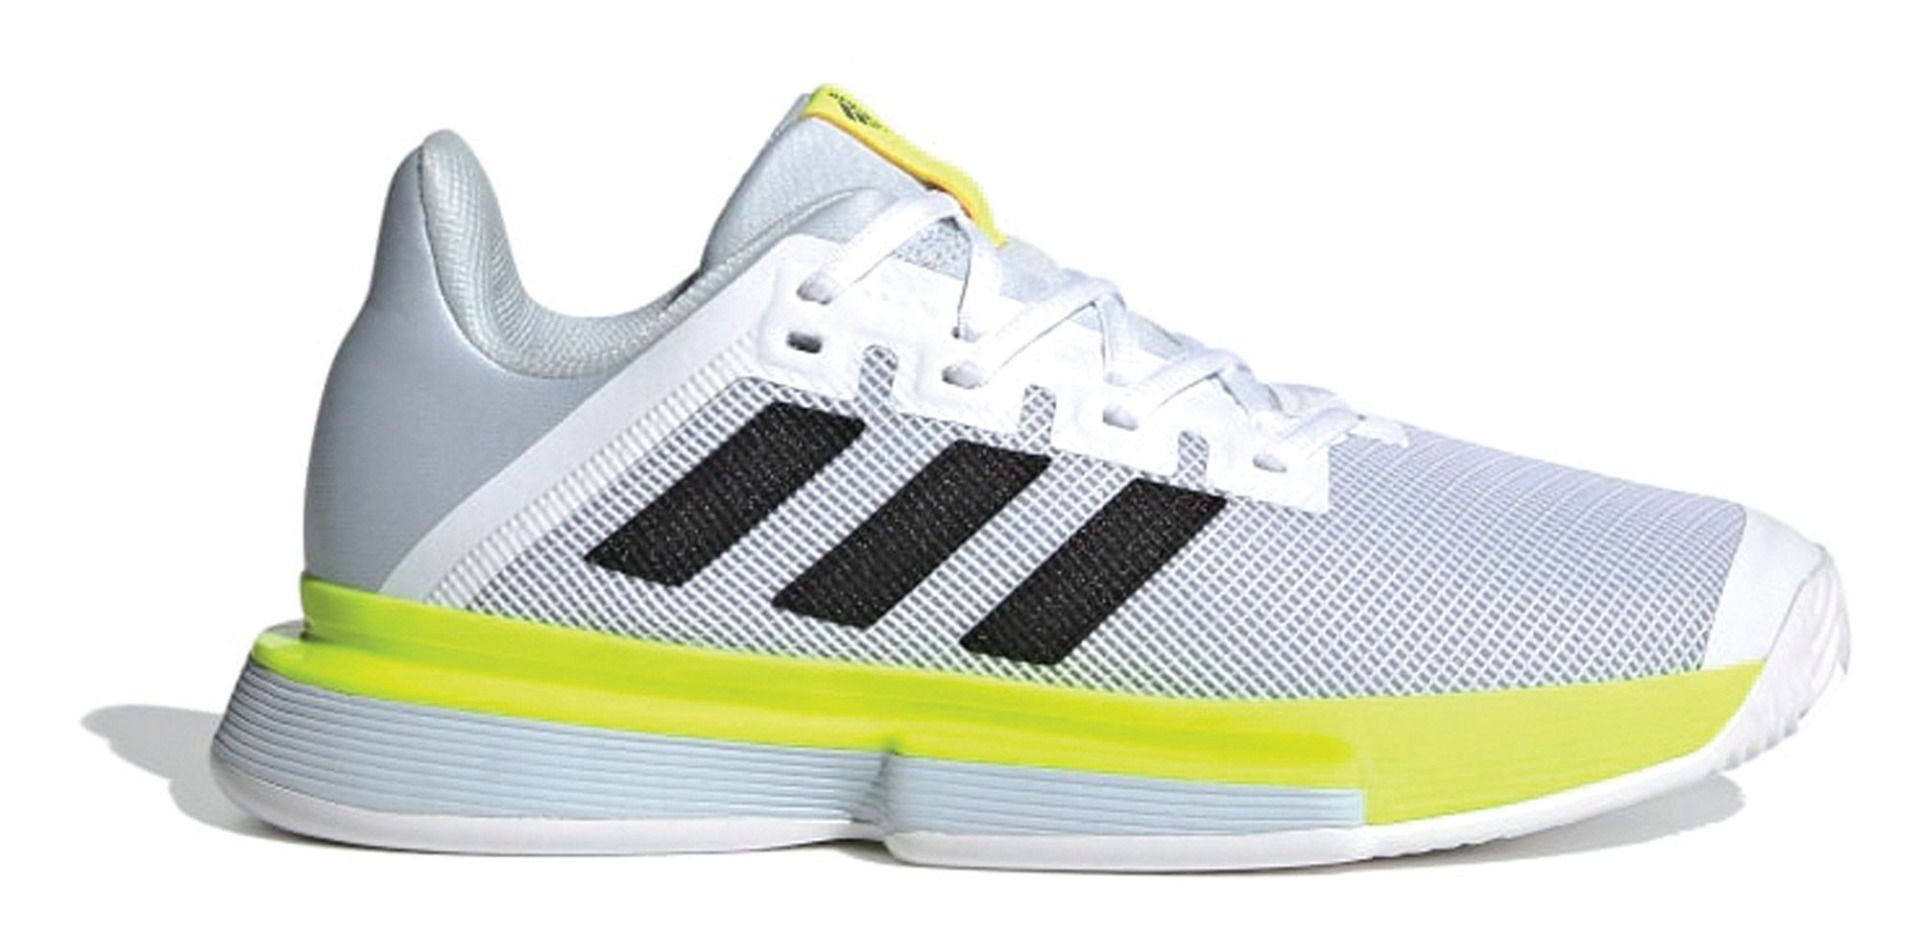 Comment reconnaitre les chaussures de tennis Adidas?